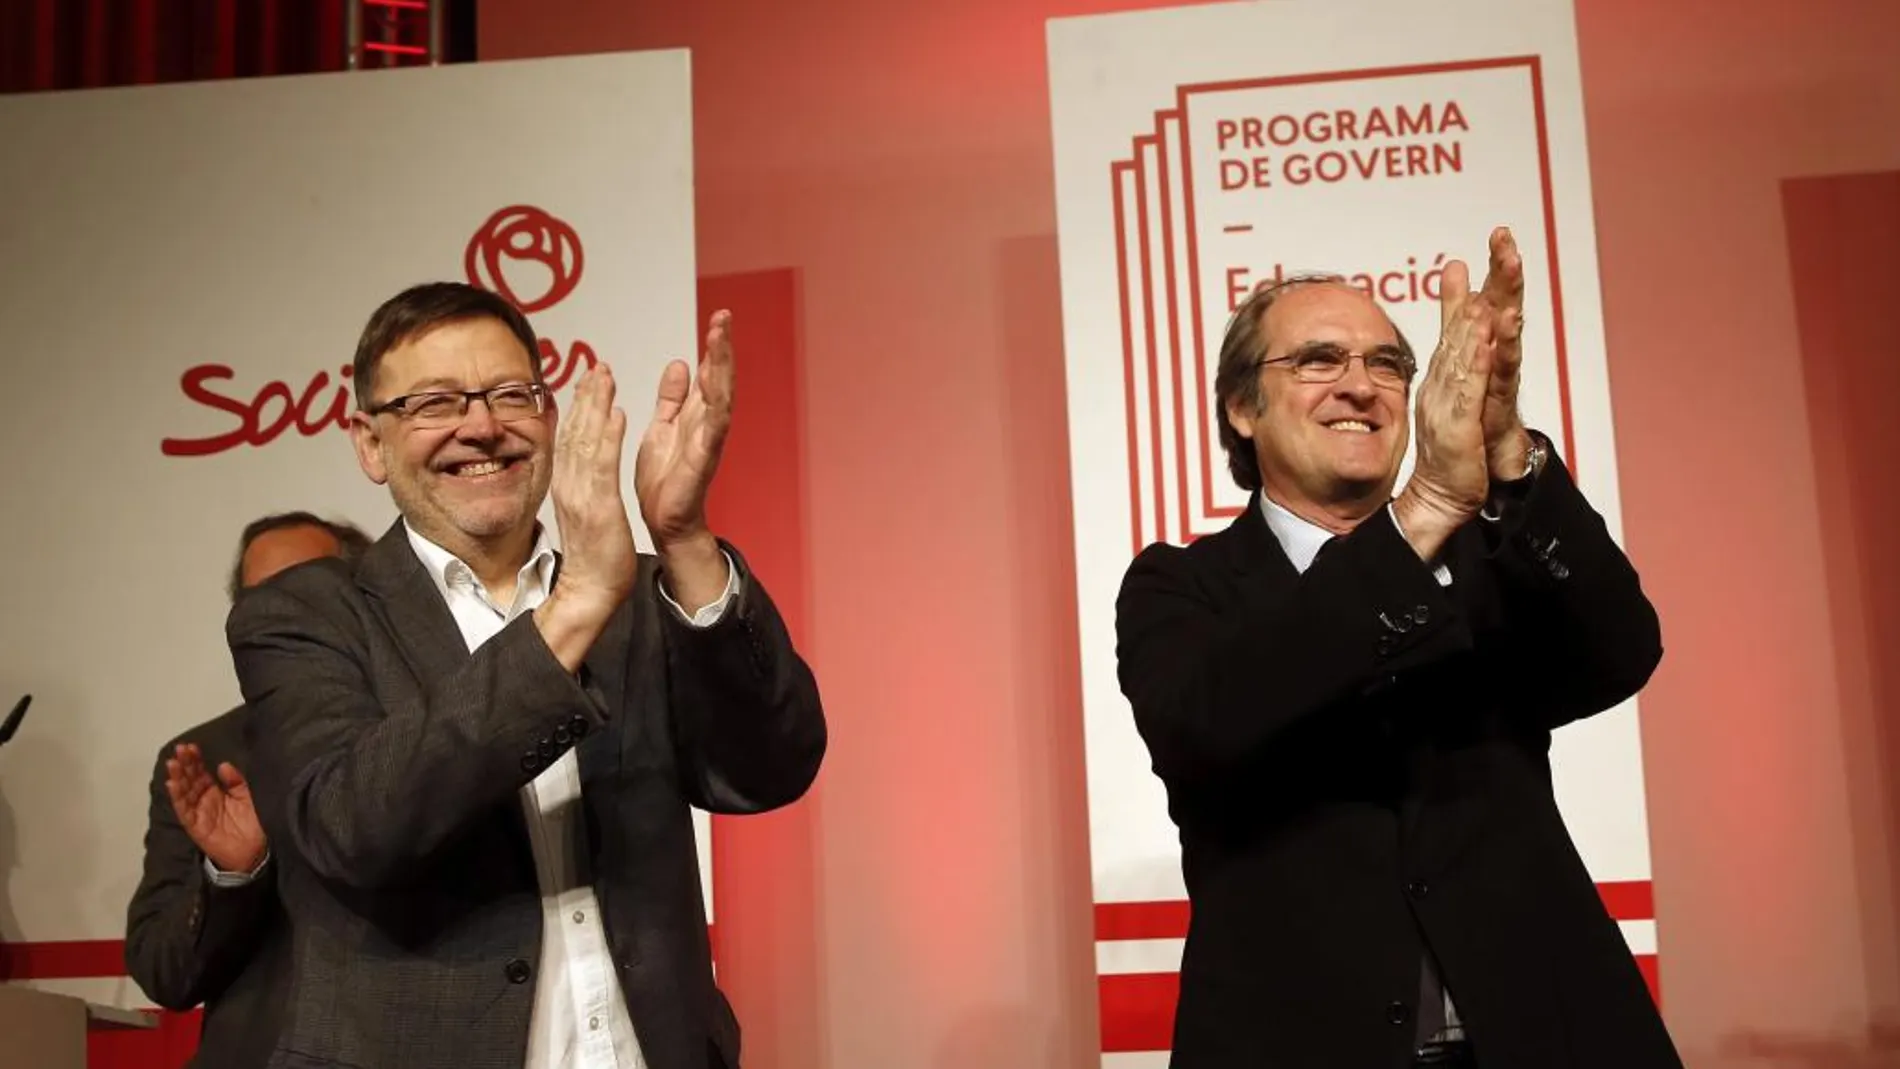 El candidato socialista a la Comunidad de Madrid, Ángel Gabilondo, y el candidato a la Generalitat Valenciana, Ximo Puig,